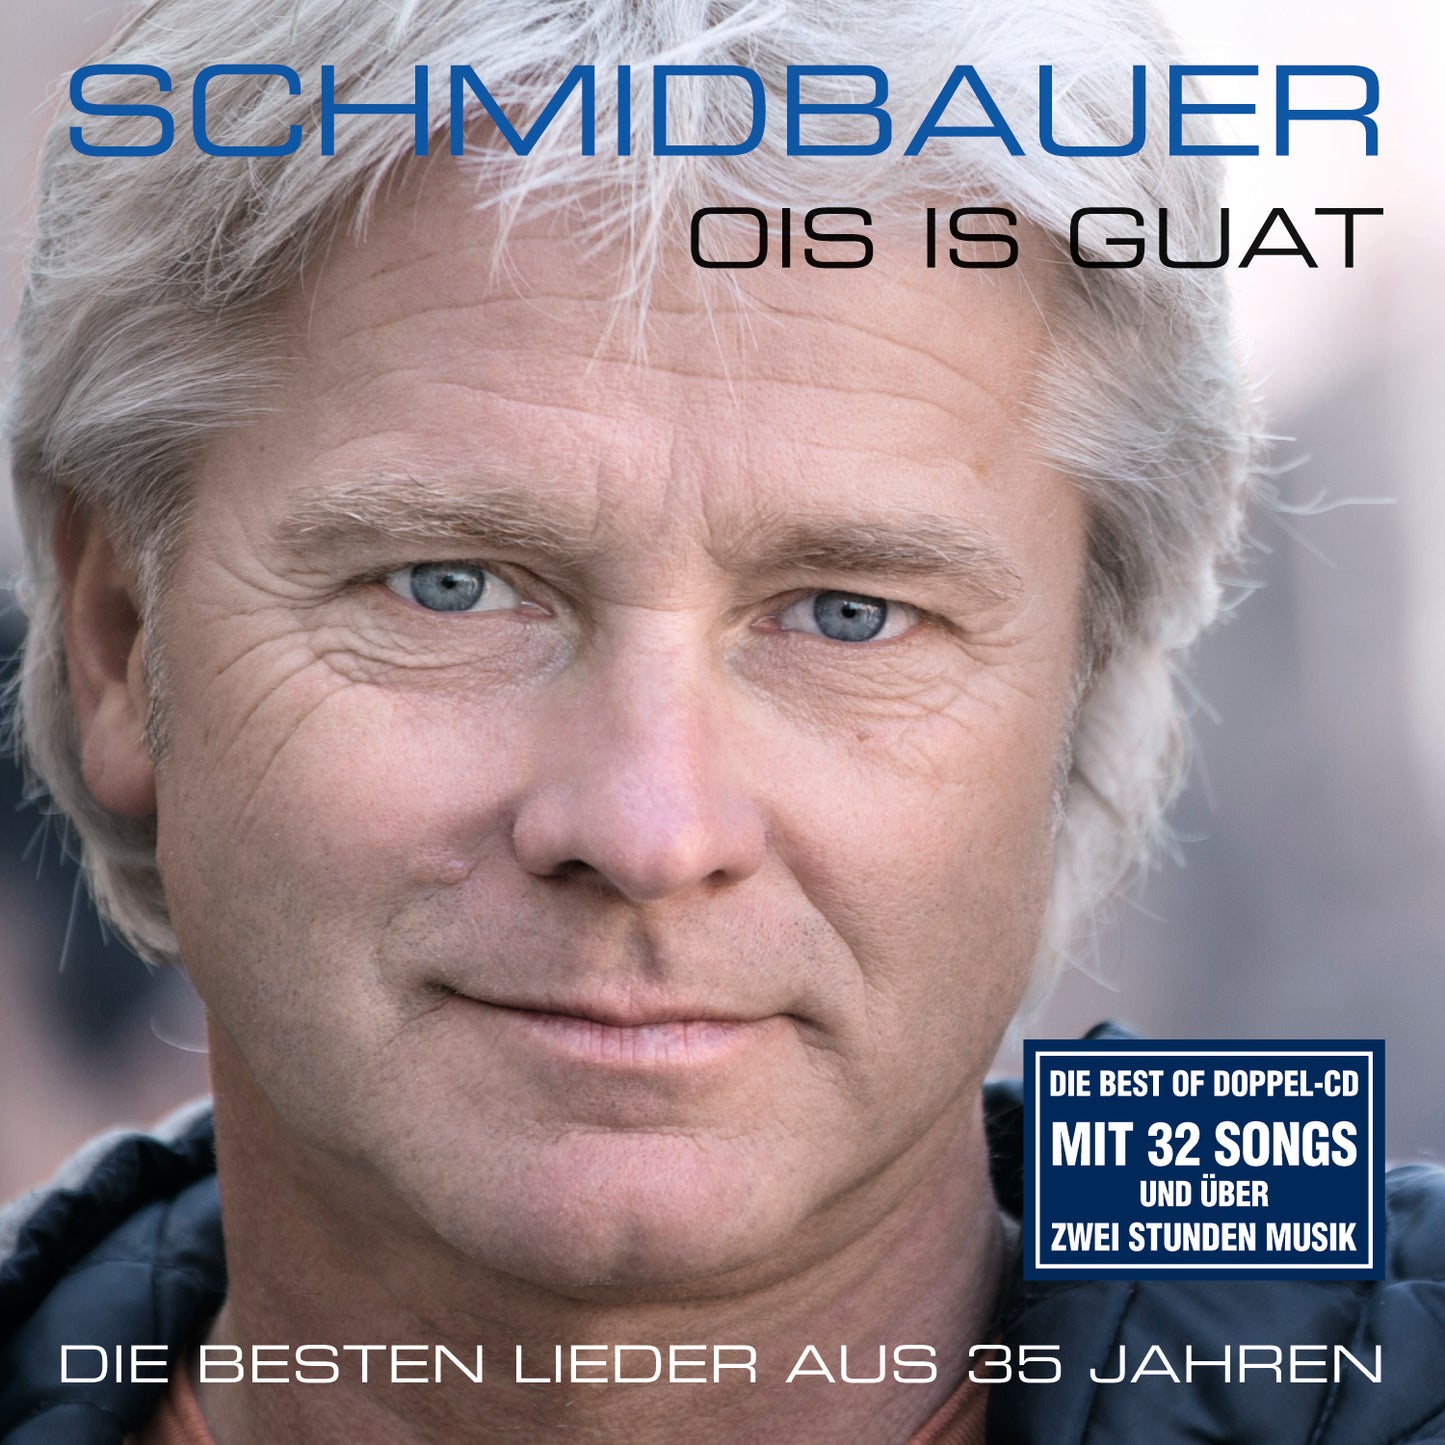 SCHMIDBAUER KÄLBERER - Ois is guat CD